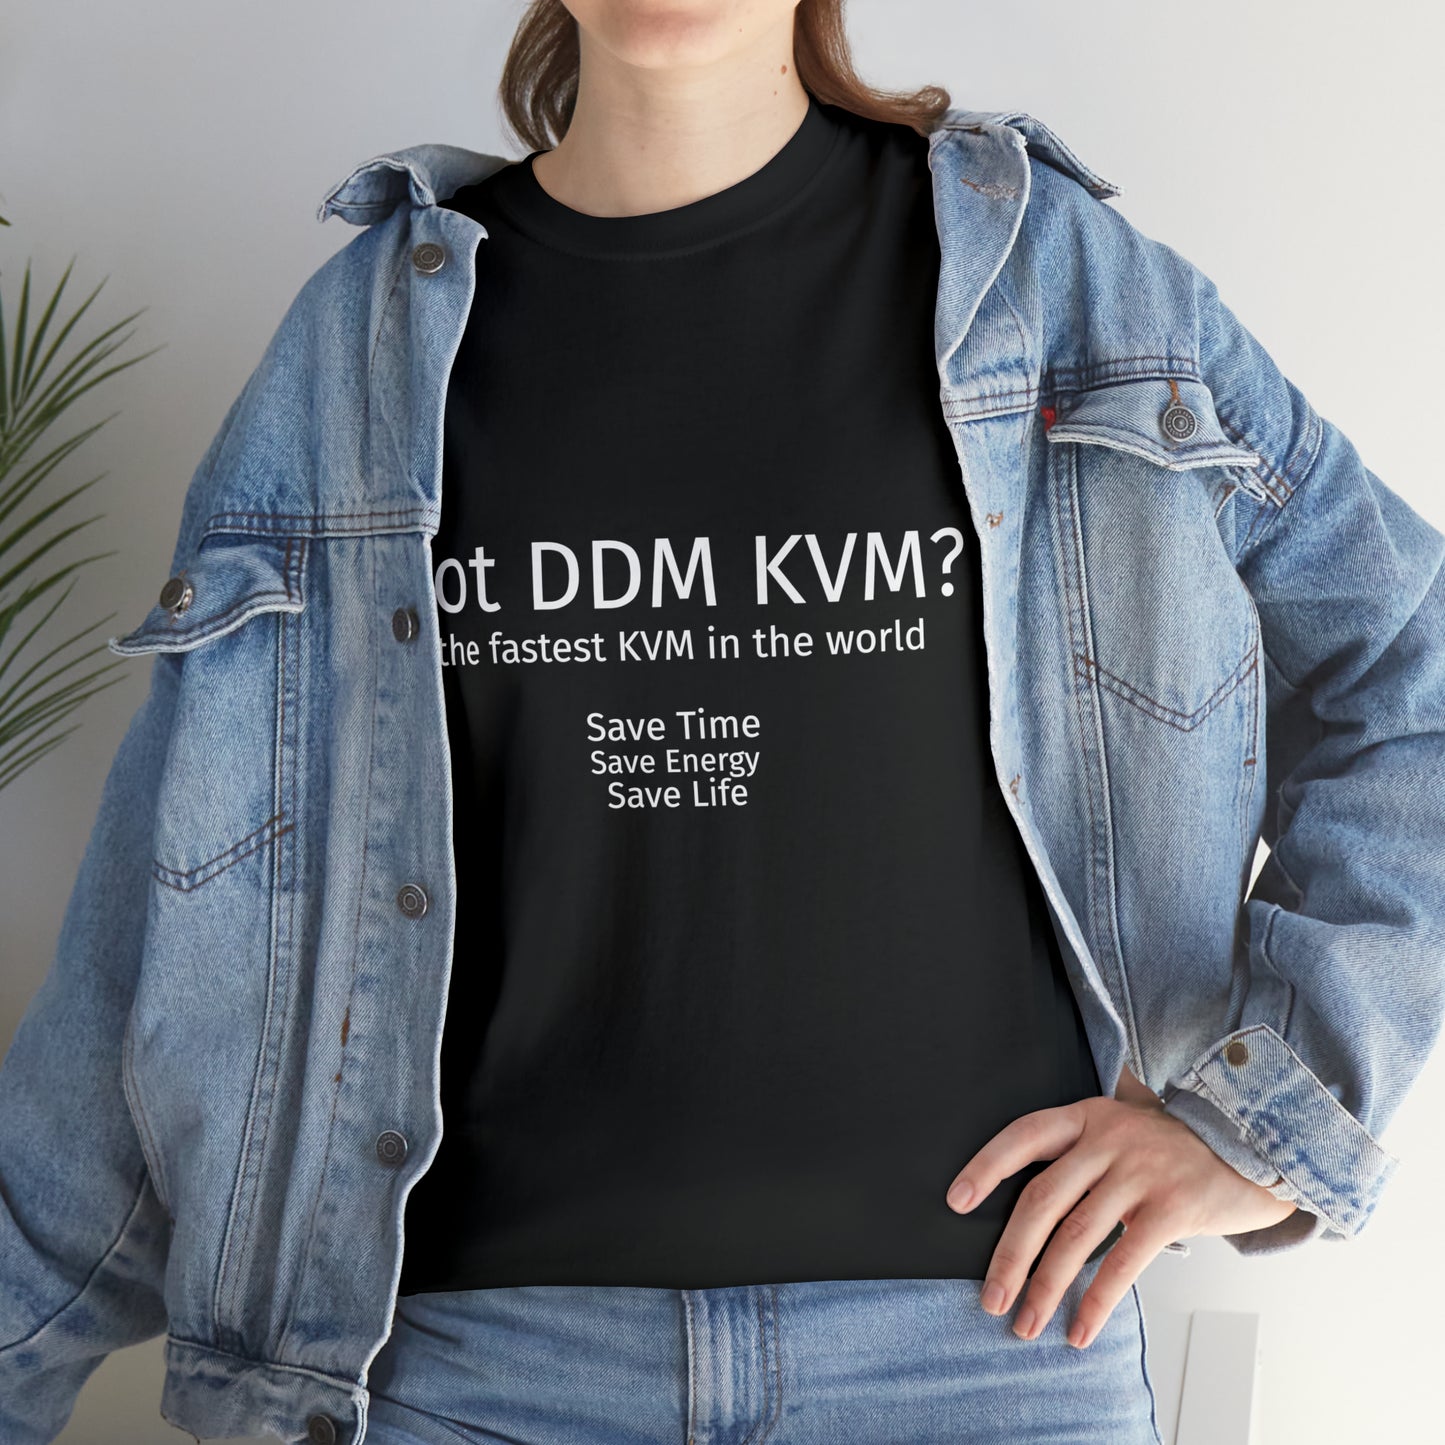 Got DDM KVM? ConnectPRO Unisex Heavy Cotton Tee